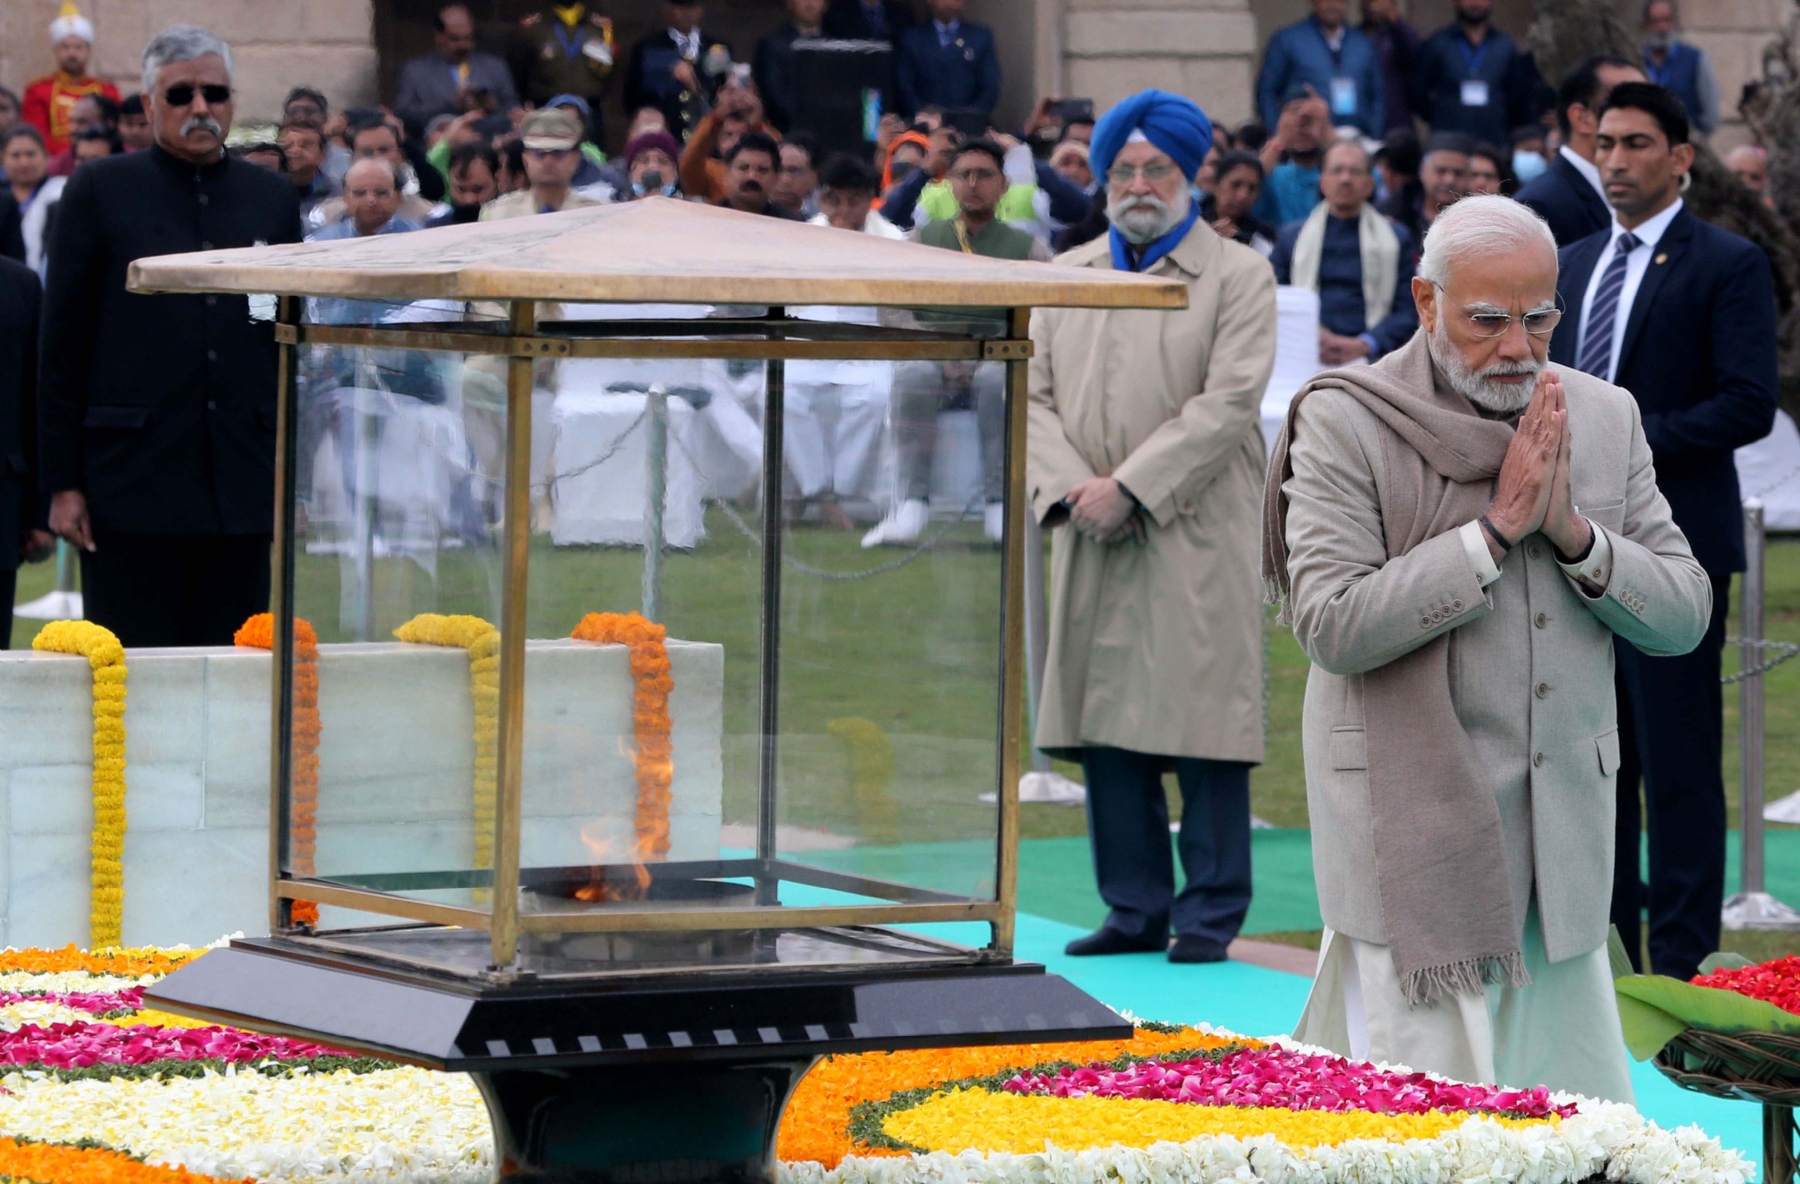 नई दिल्ली में समवार 30 जनवरी 2023 को प्रधानमंत्री नरेन्द्र मोदी ने शहीद दिवस के अवसर पर गांधी स्मृति में श्रद्धांजलि अर्पित के बाद परिक्रमा करते हुए। हिन्दुस्थान समाचार/ फोटो गणेश बिष्ट 